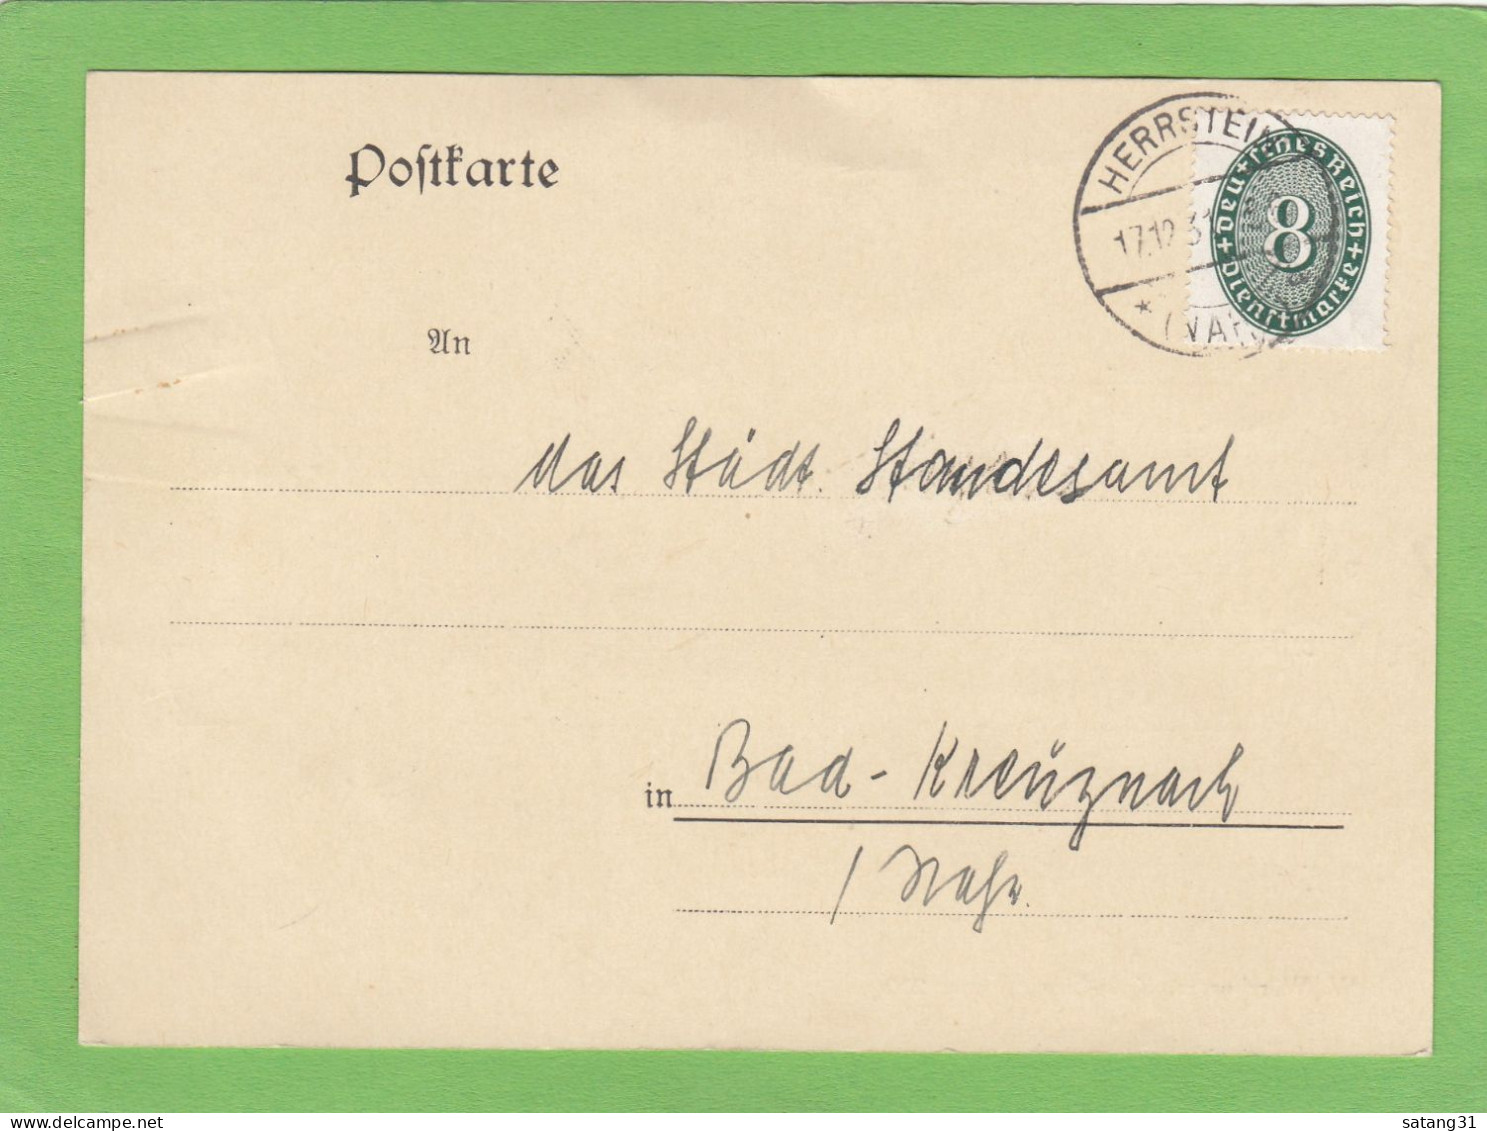 DIE POLIZEIVERWALTUNG/DER BÜGERMEISTER AUS HERRTSTEIN.POSTKARTE NACH BAD KREUZNACH,1931. - Dienstzegels